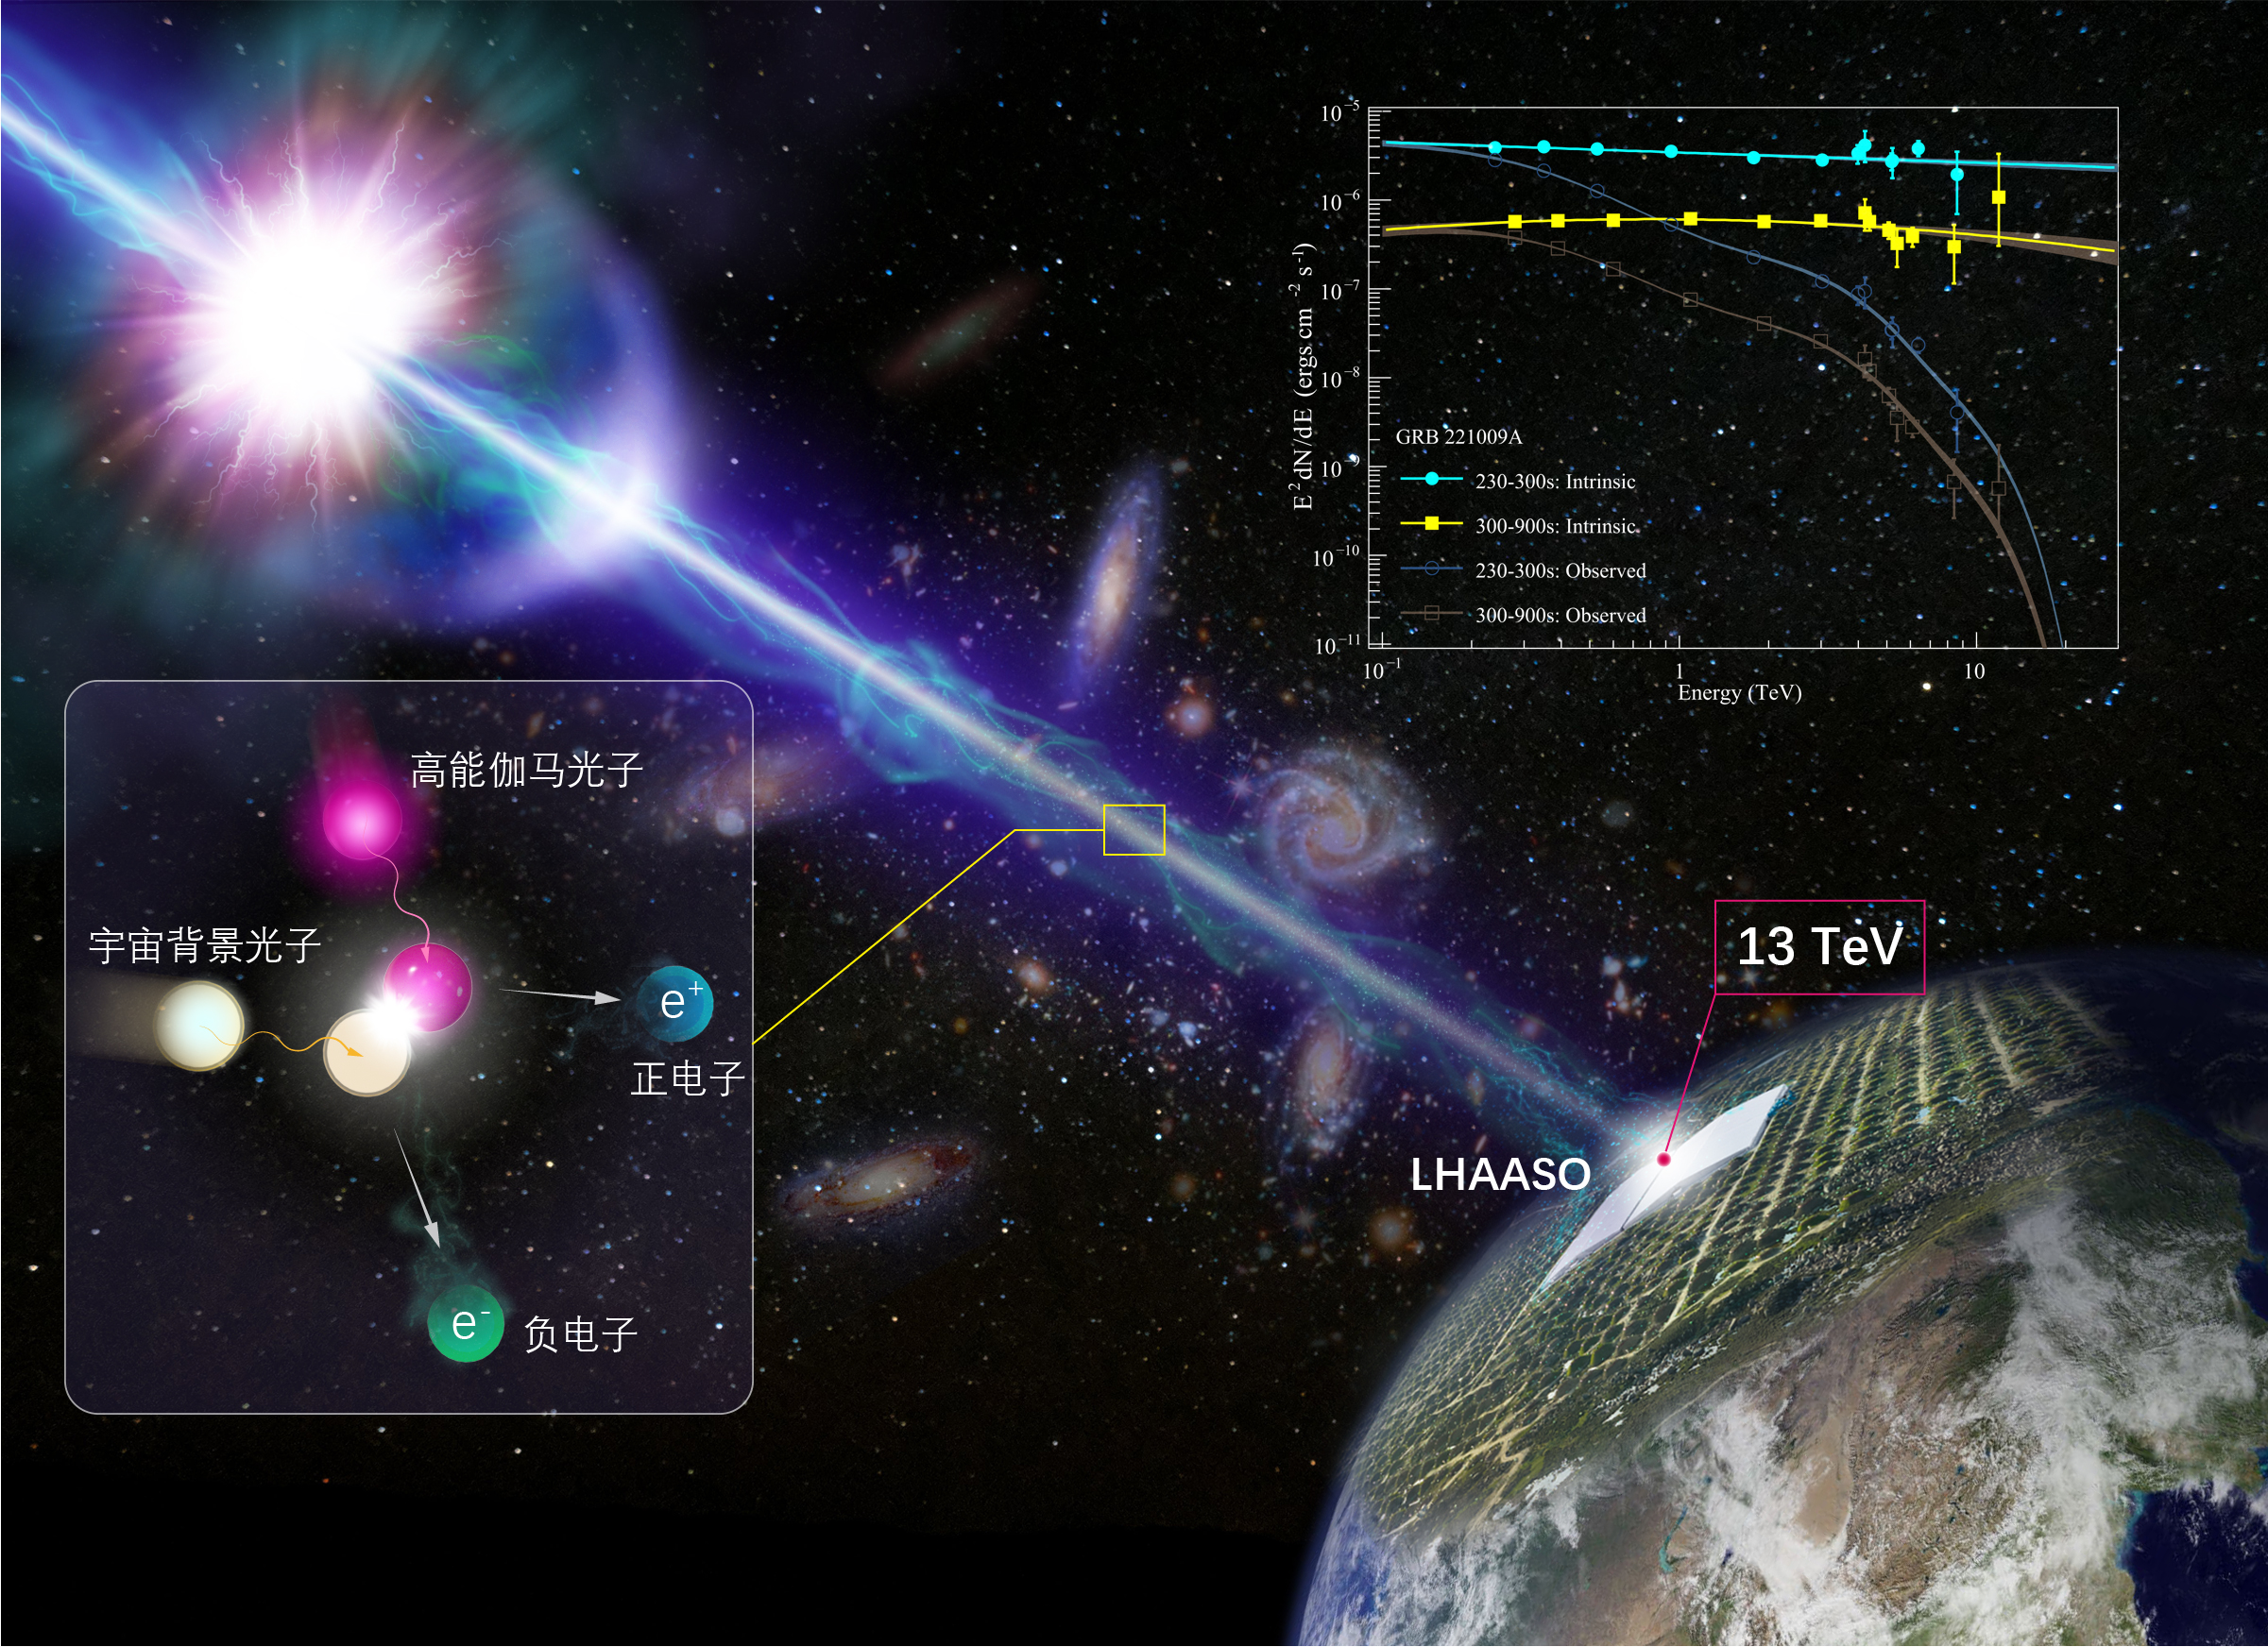 “拉索”精确测量迄今最亮伽马射线暴高能辐射能谱 开启新物理探索之门